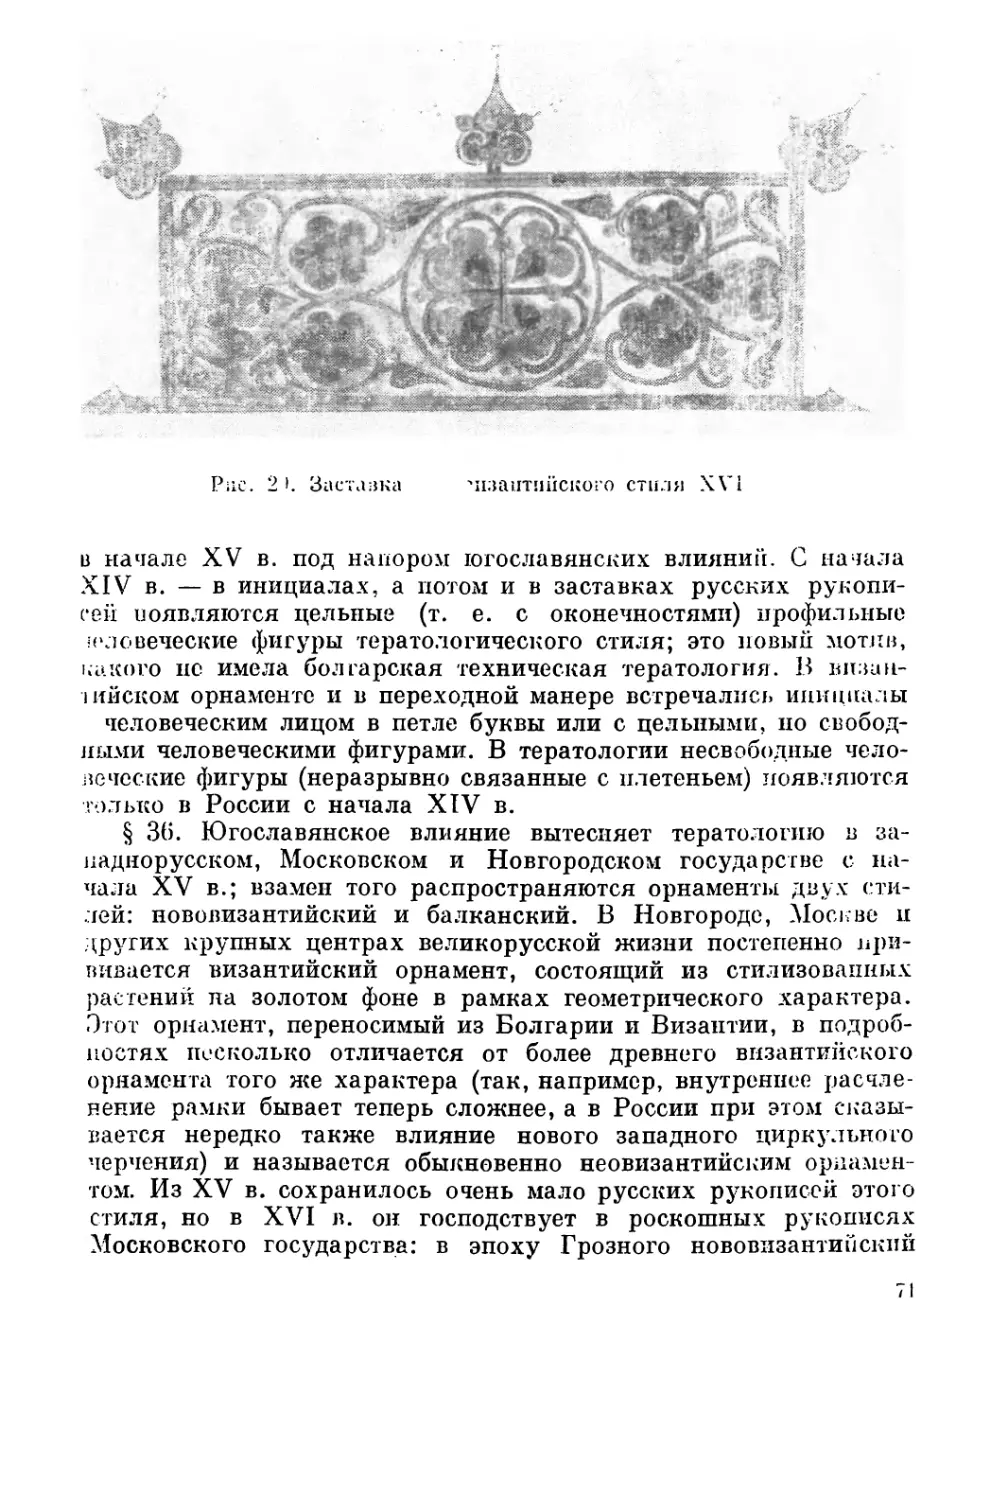 Вытеснение русской тератологии стилями «нововизантийским» и «балканским» с начала XV в